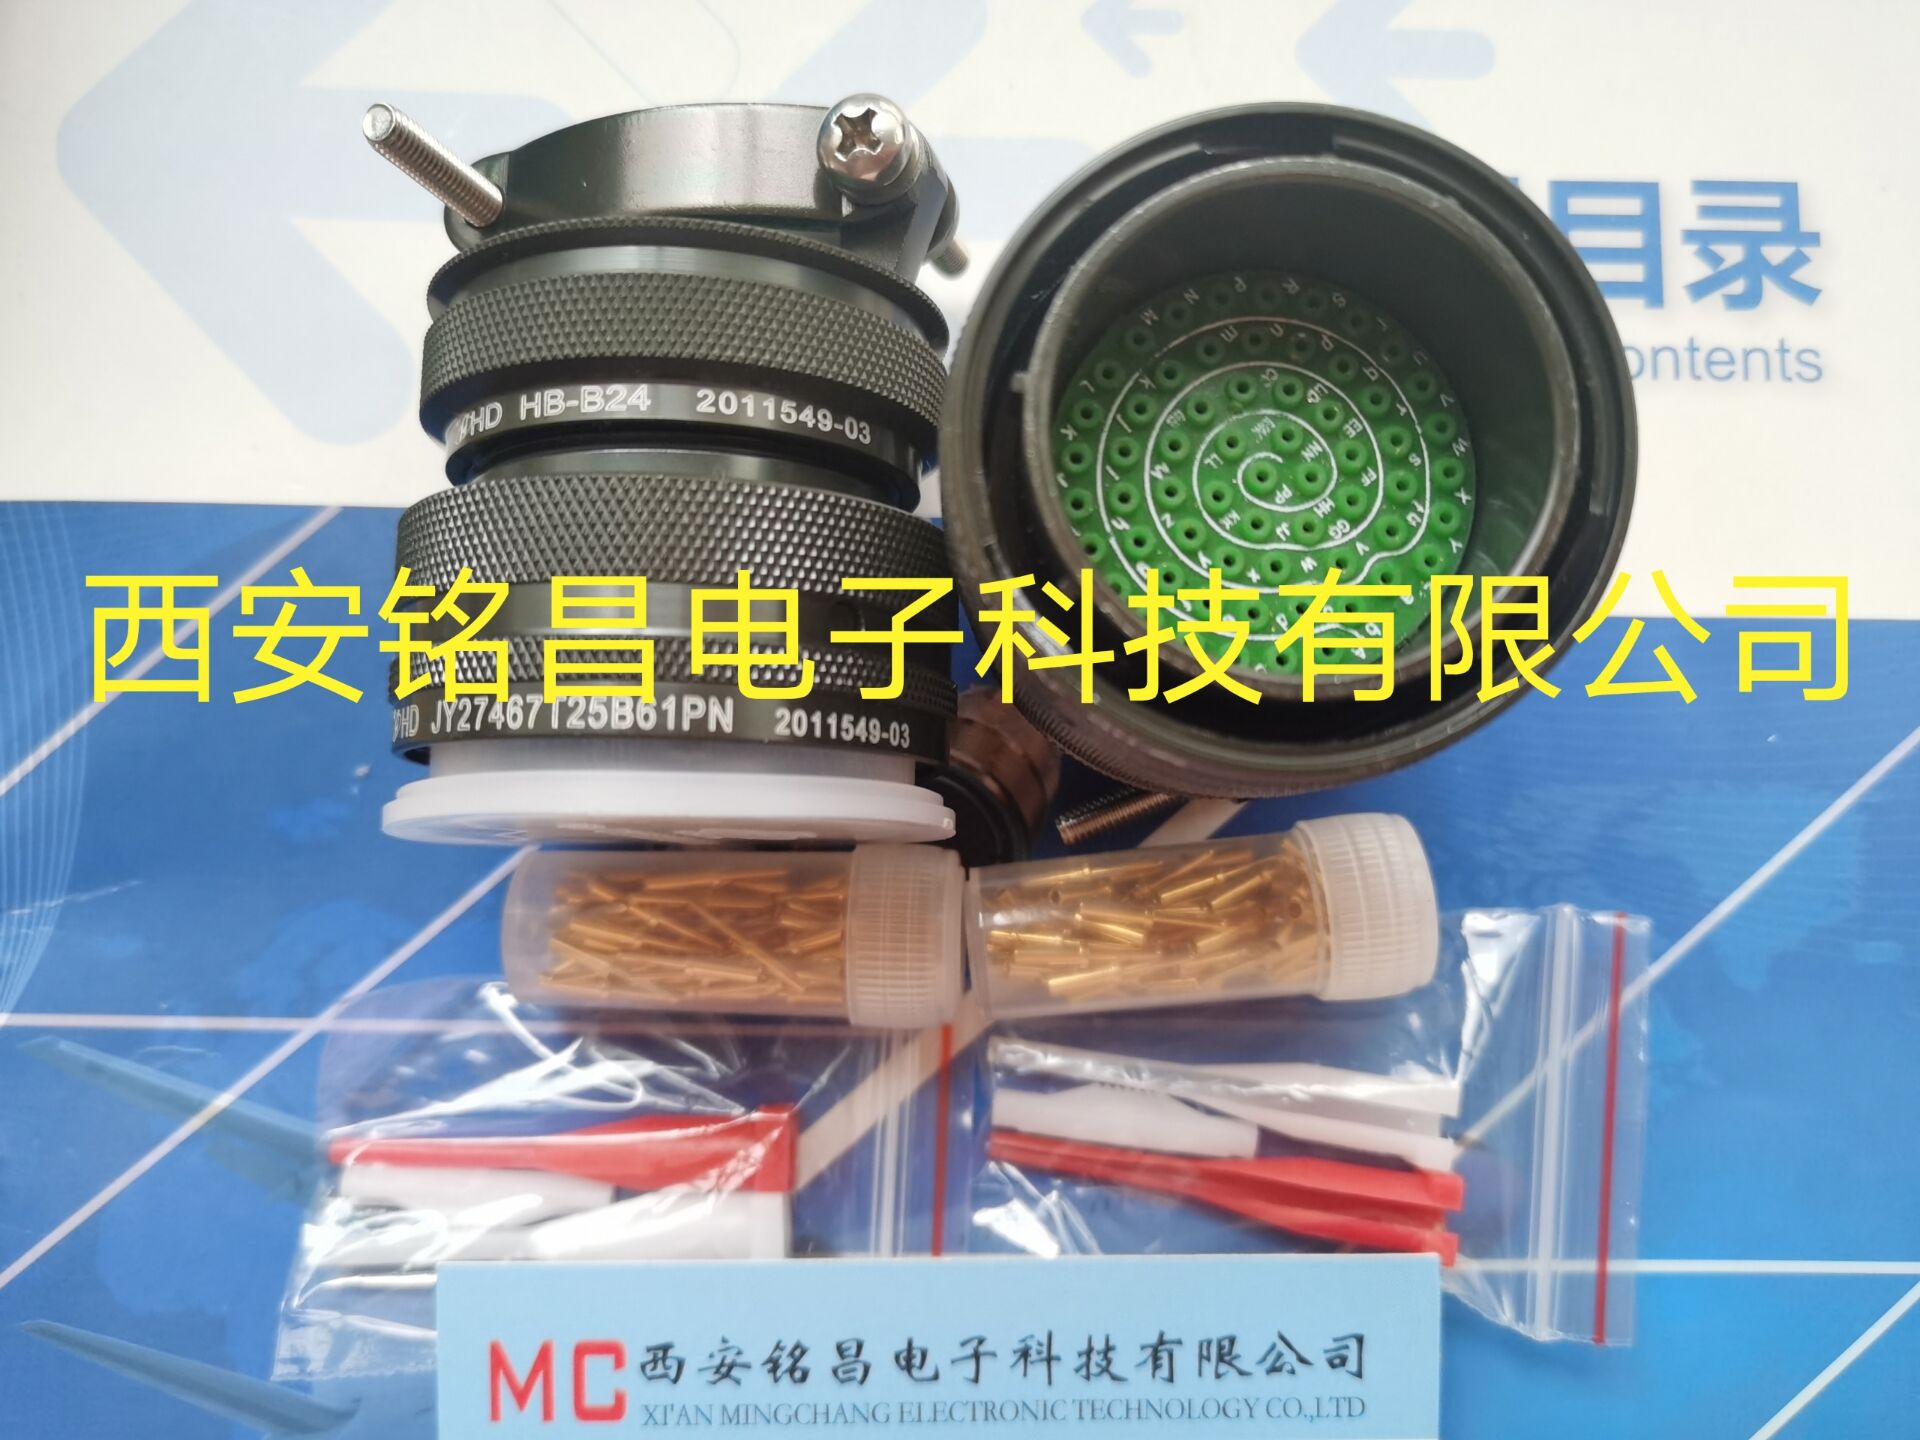 MCDZ西安铭昌销售JY27469E09F35CN-H圆形连接器-厂家直销